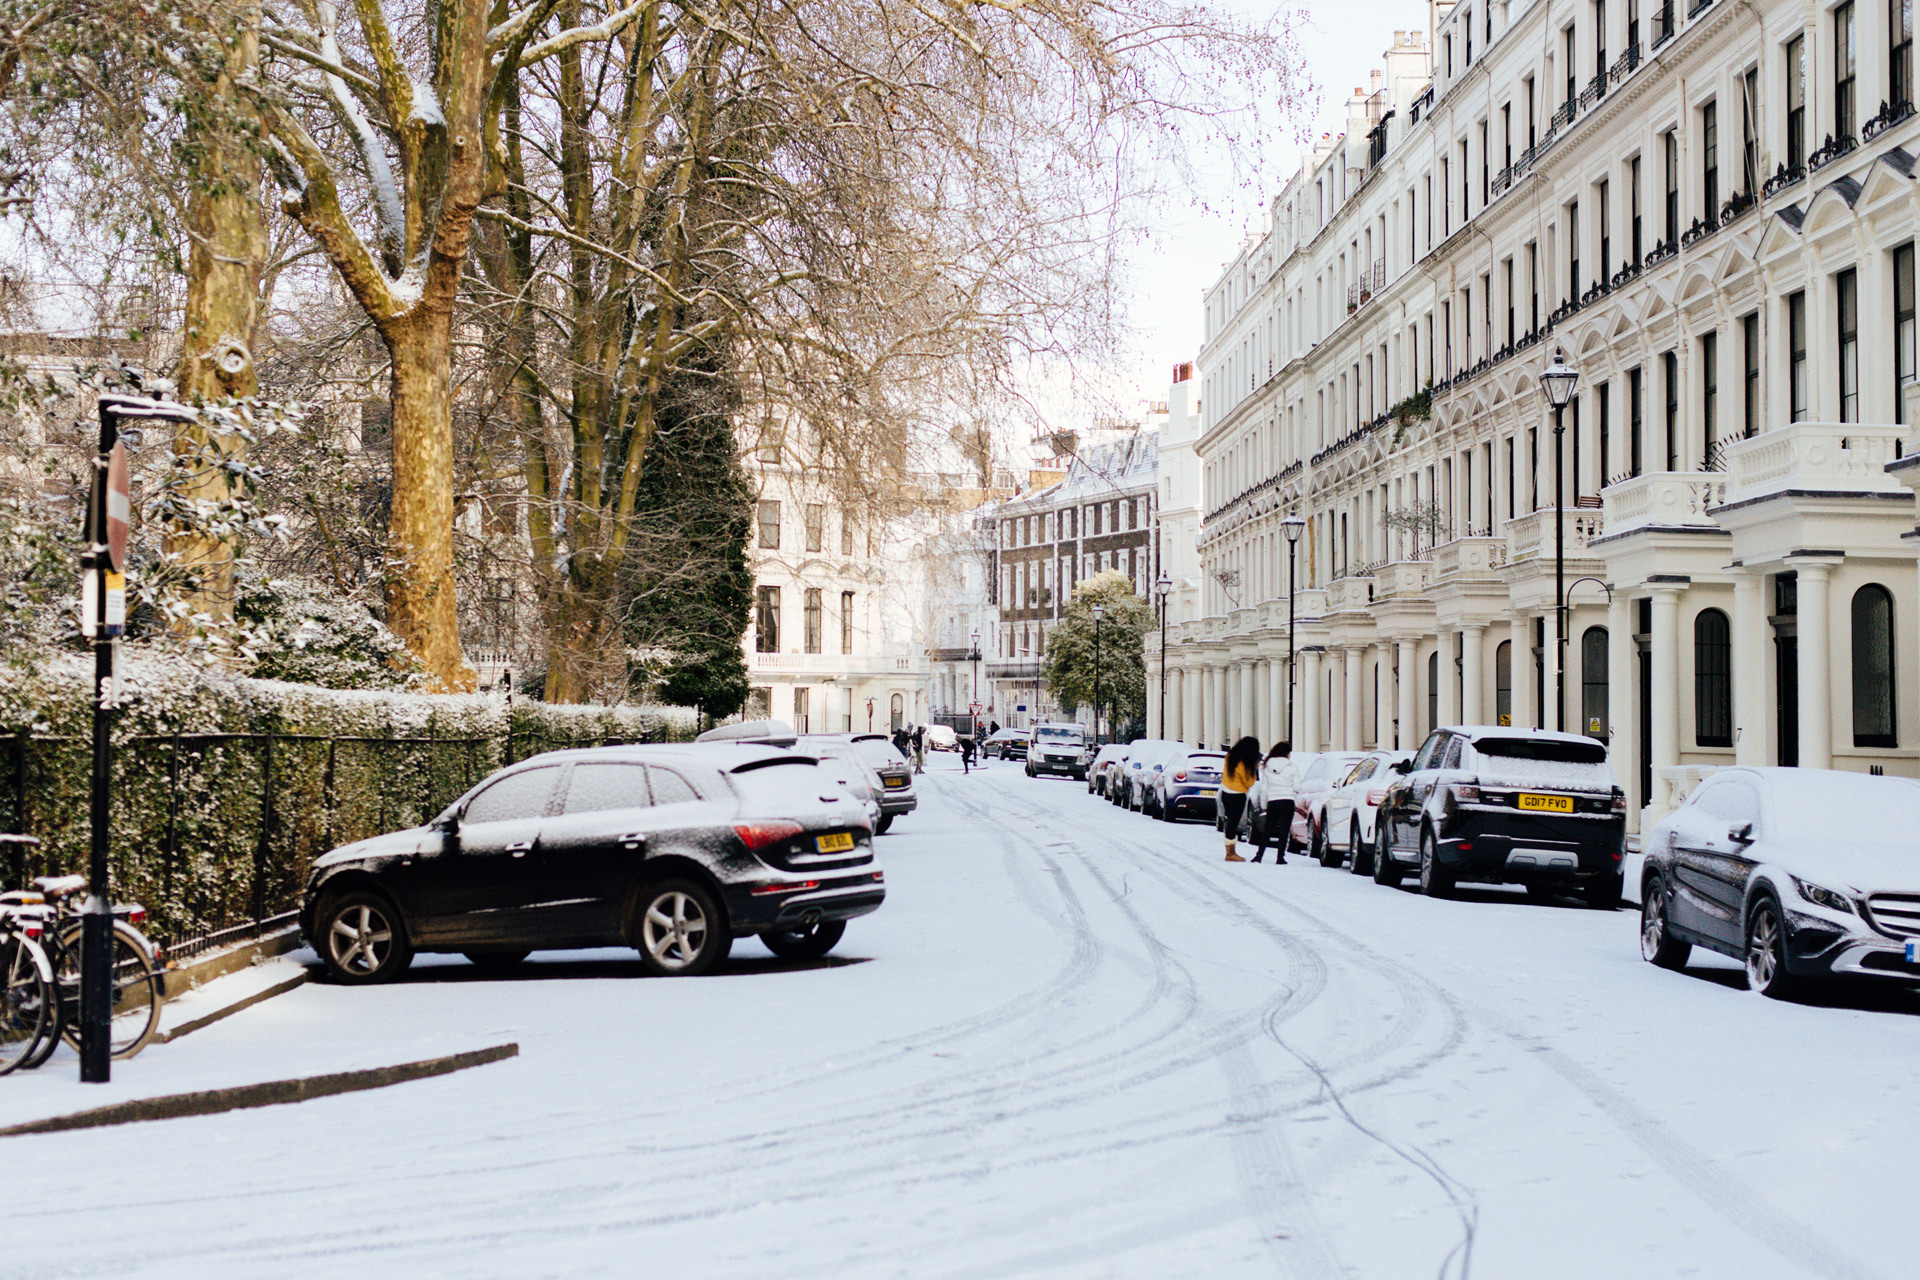 A snowy street in London